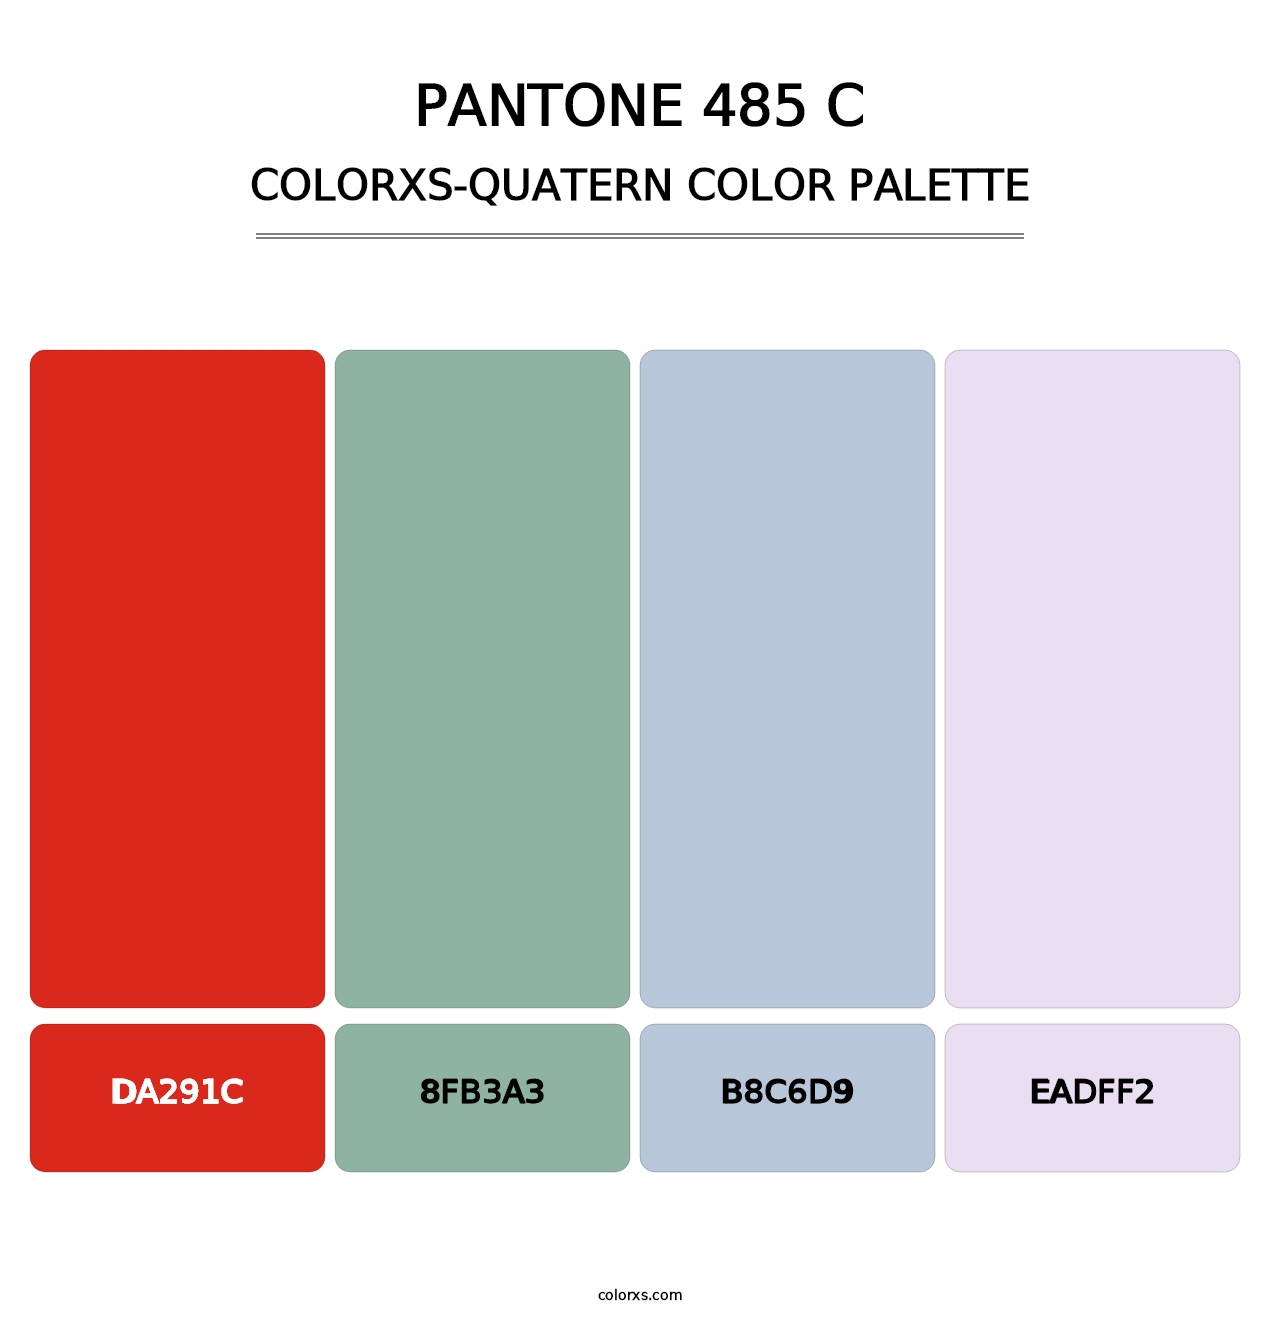 PANTONE 485 C - Colorxs Quatern Palette